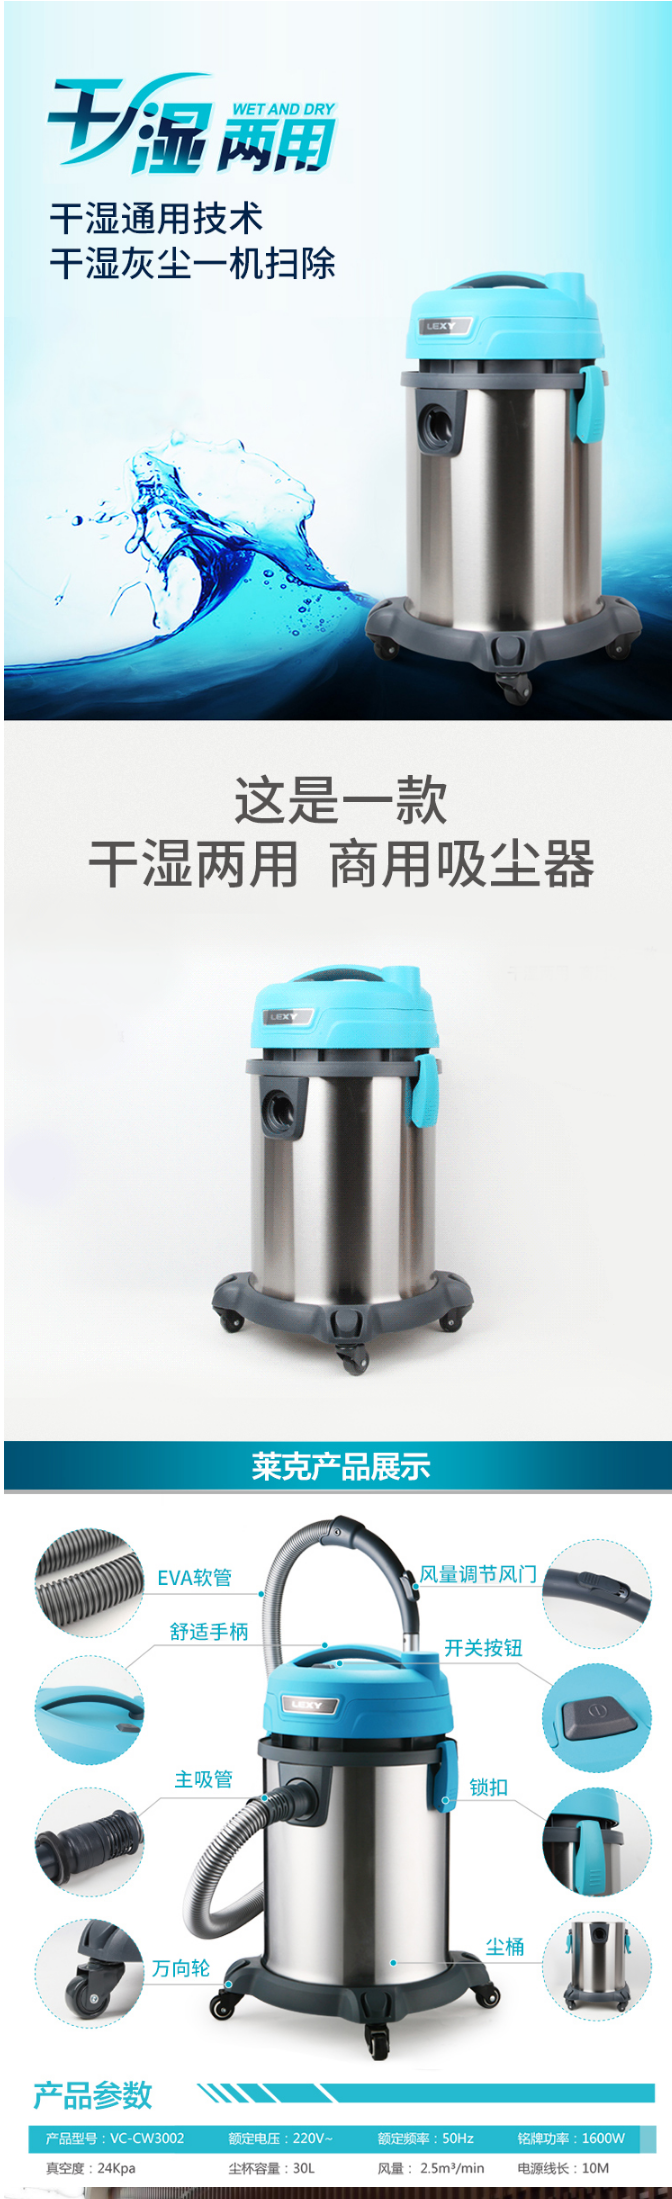 【莱克VC-CW3002】莱克吸尘器VC-CW3002-商用桶式干湿两用吸尘器【行情-报价-价格-评_01.png